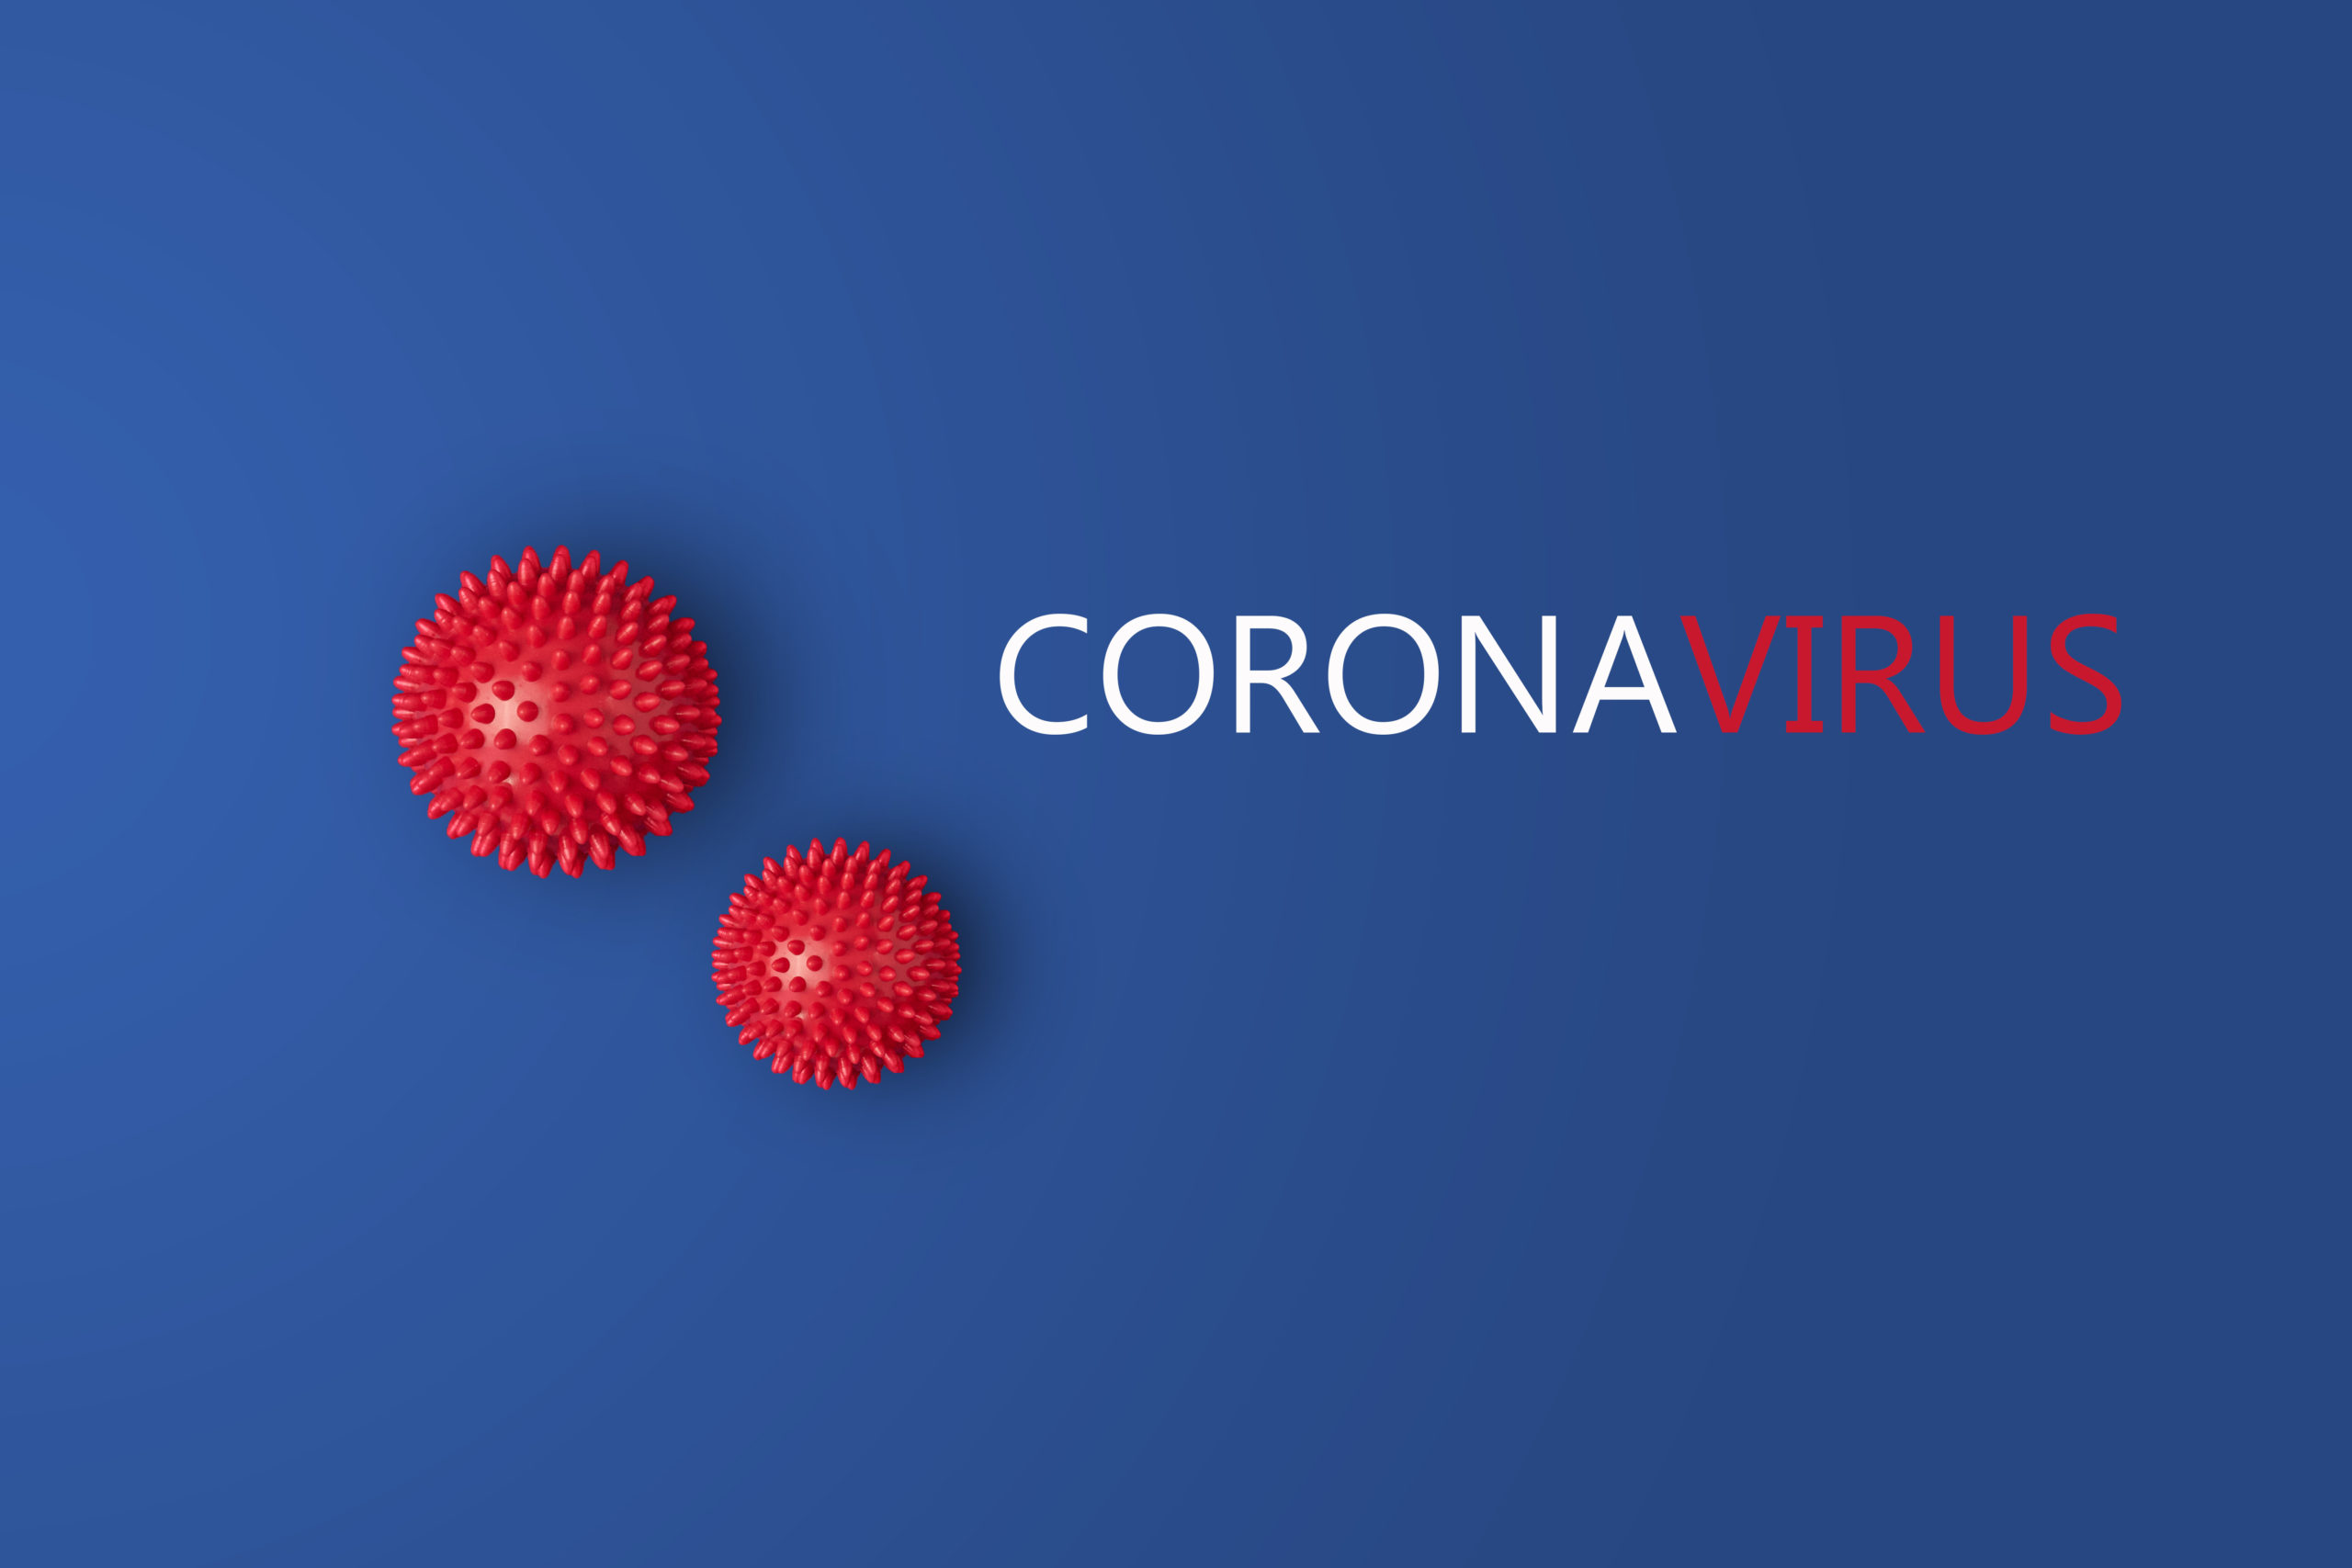 Coronavirus and pregnancy